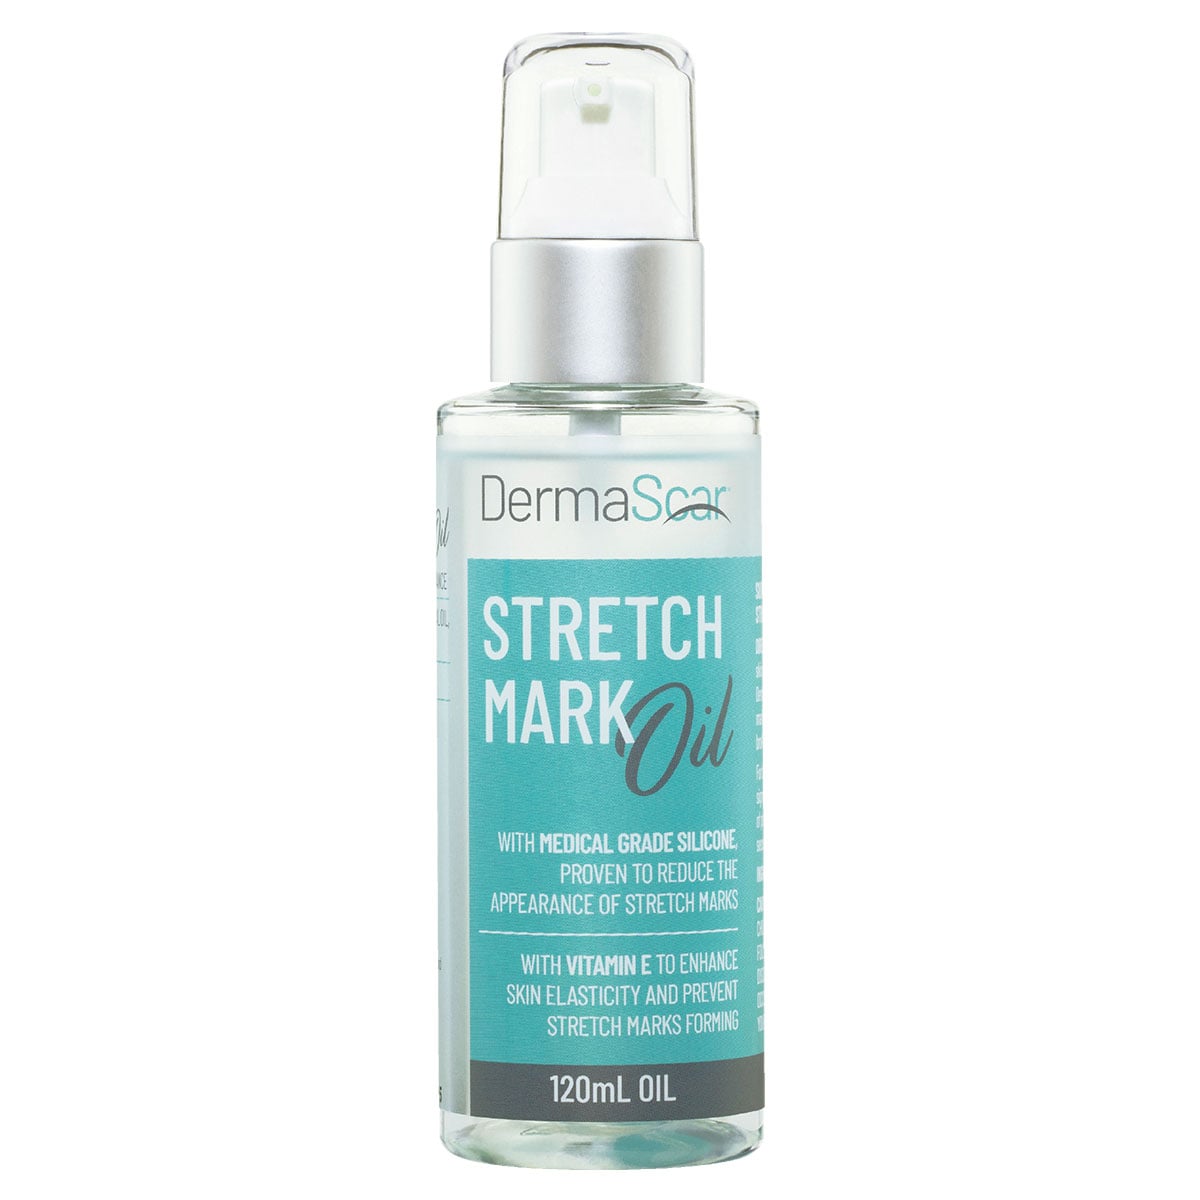 DermaScar Stretch Mark Oil 120ml